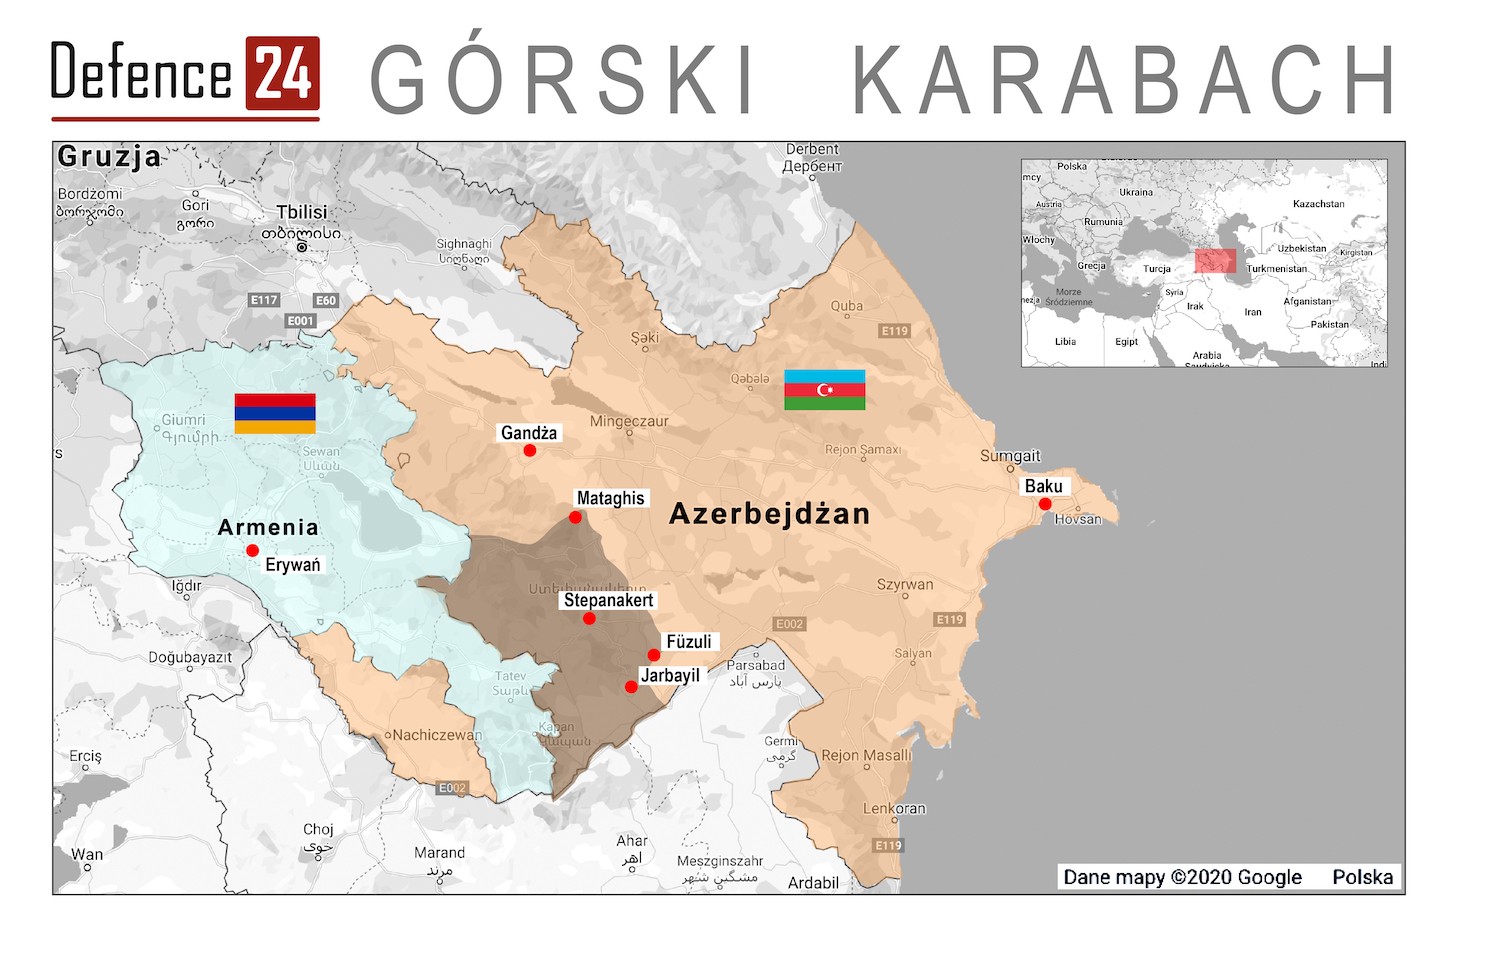 Rys. Katarzyna Głowacka/Defence24.pl, dane: google maps